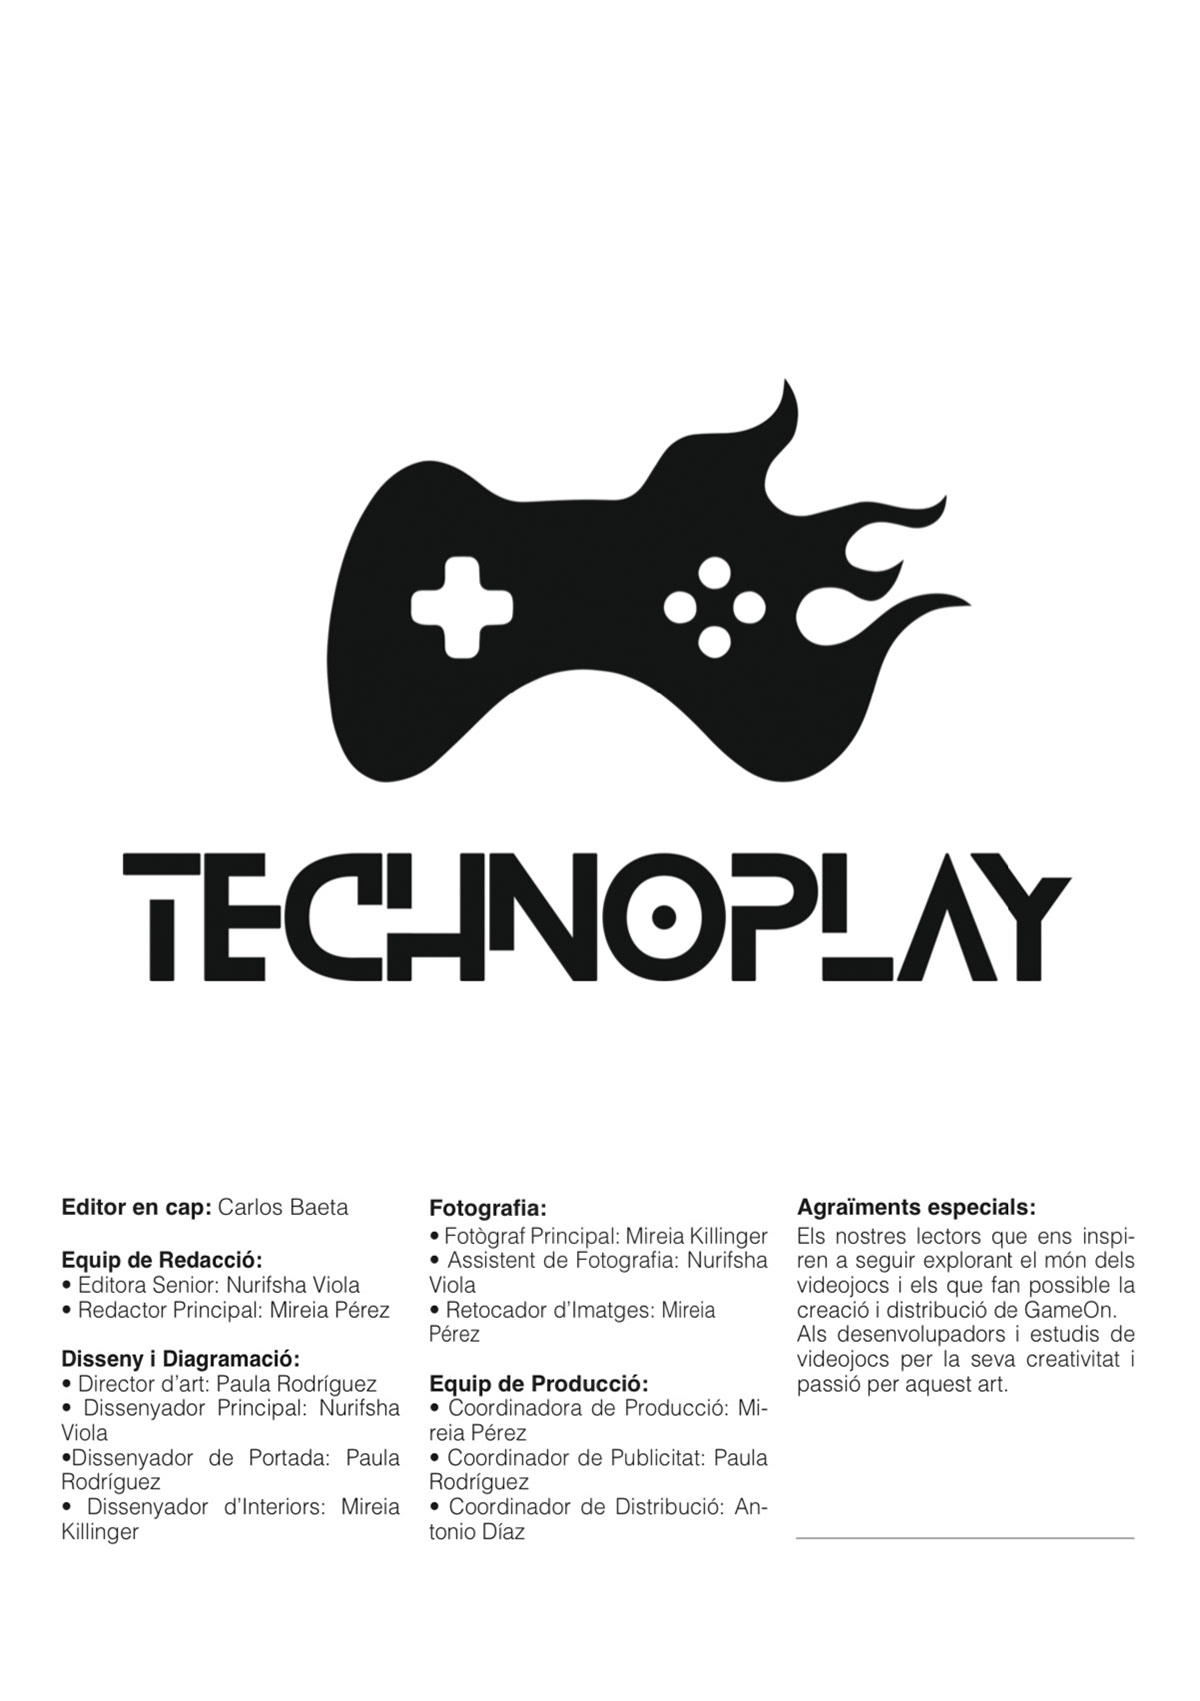 revista videojuegos diseñografico maquetación consolas thewitcher FNaF mariokart league of legends PlayStation 5